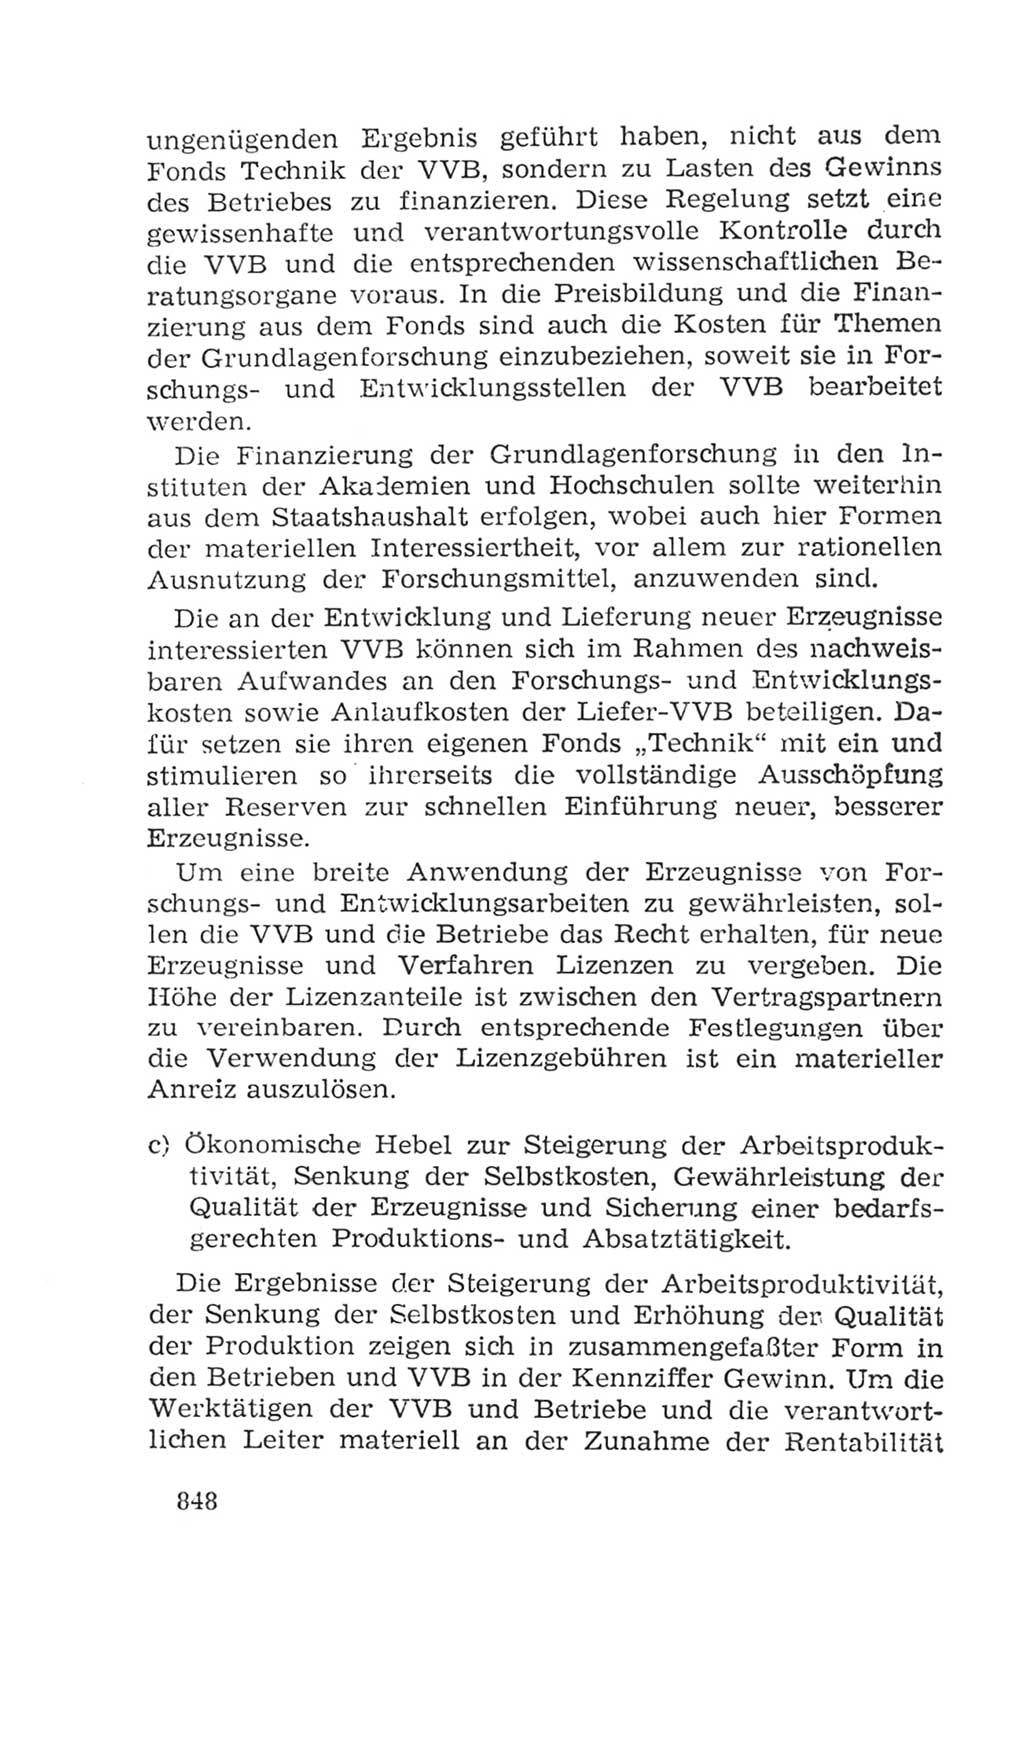 Volkskammer (VK) der Deutschen Demokratischen Republik (DDR), 4. Wahlperiode 1963-1967, Seite 848 (VK. DDR 4. WP. 1963-1967, S. 848)